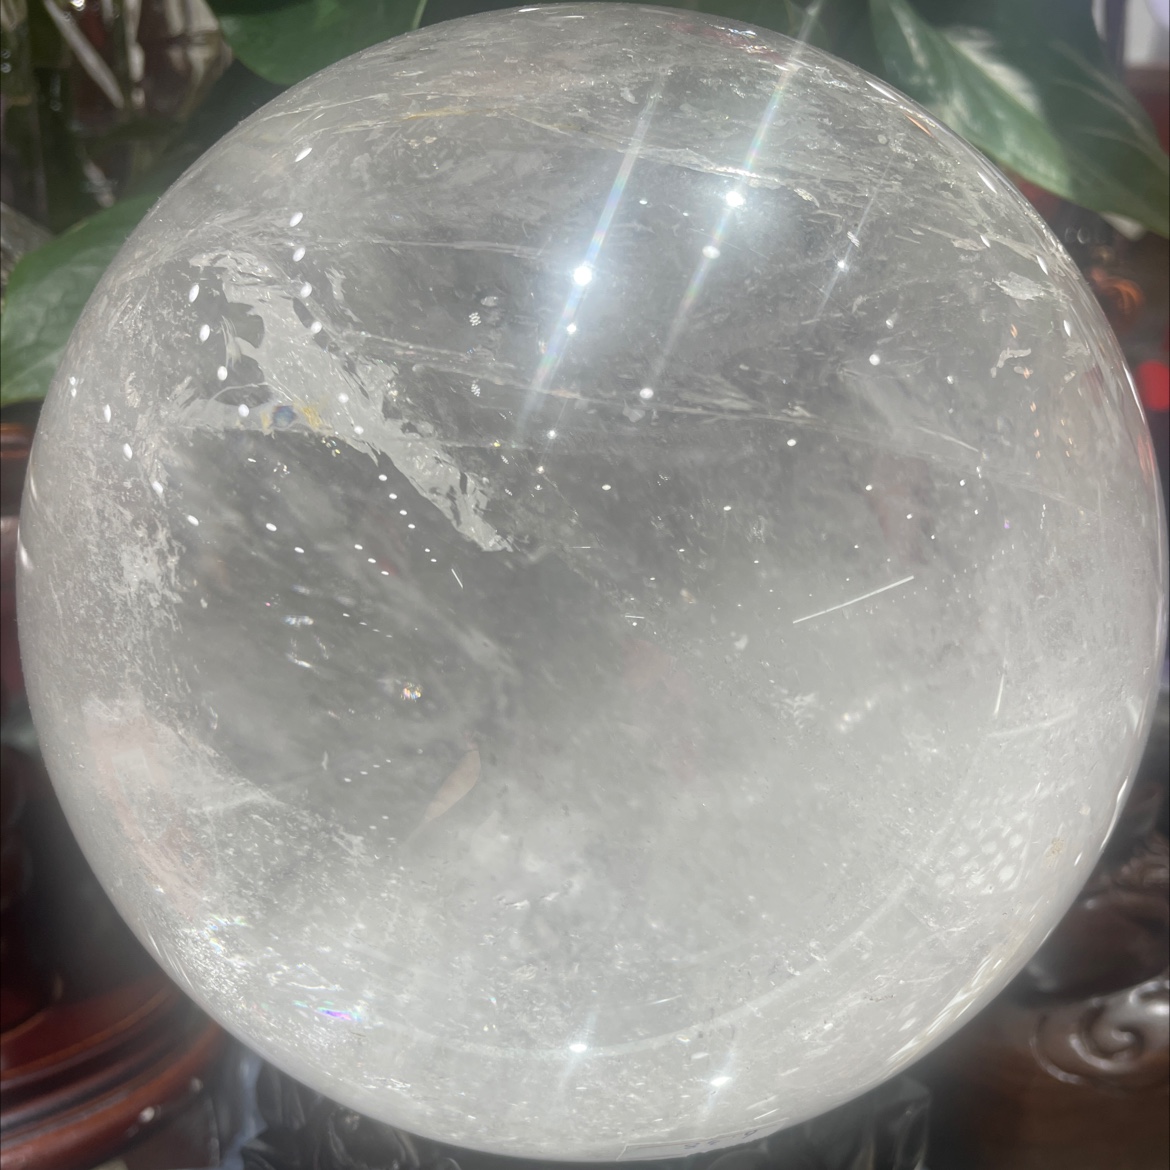 巴西天然水晶  天然水晶球 高档水晶装饰品 sj-1图